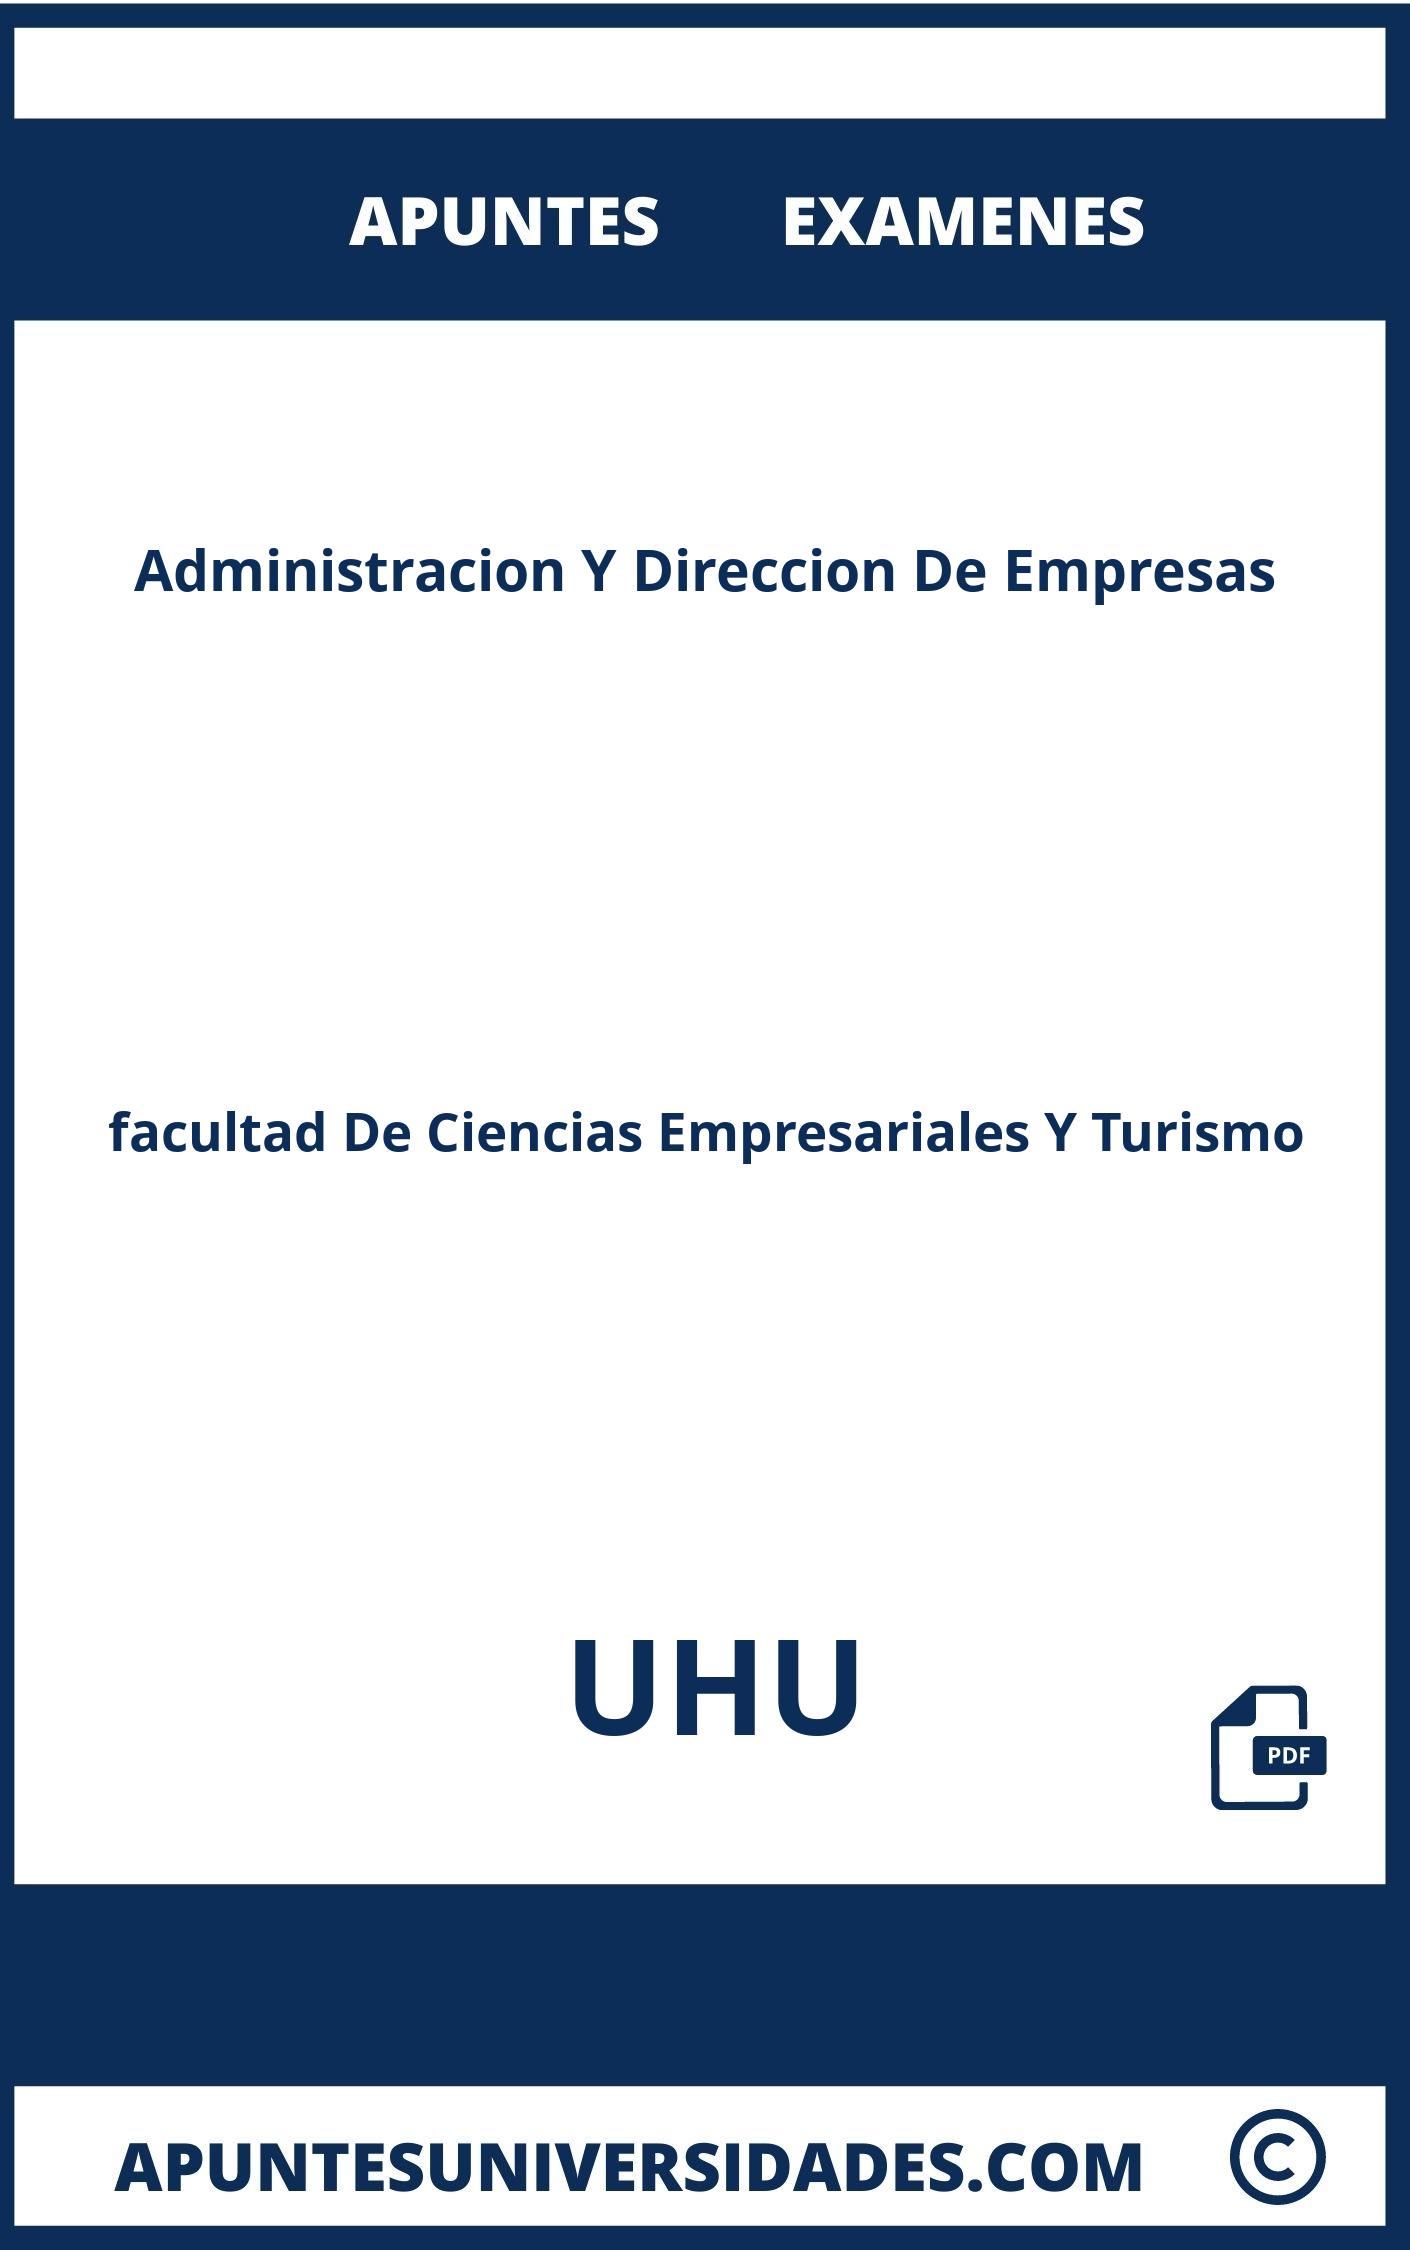 Examenes Apuntes Administracion Y Direccion De Empresas UHU